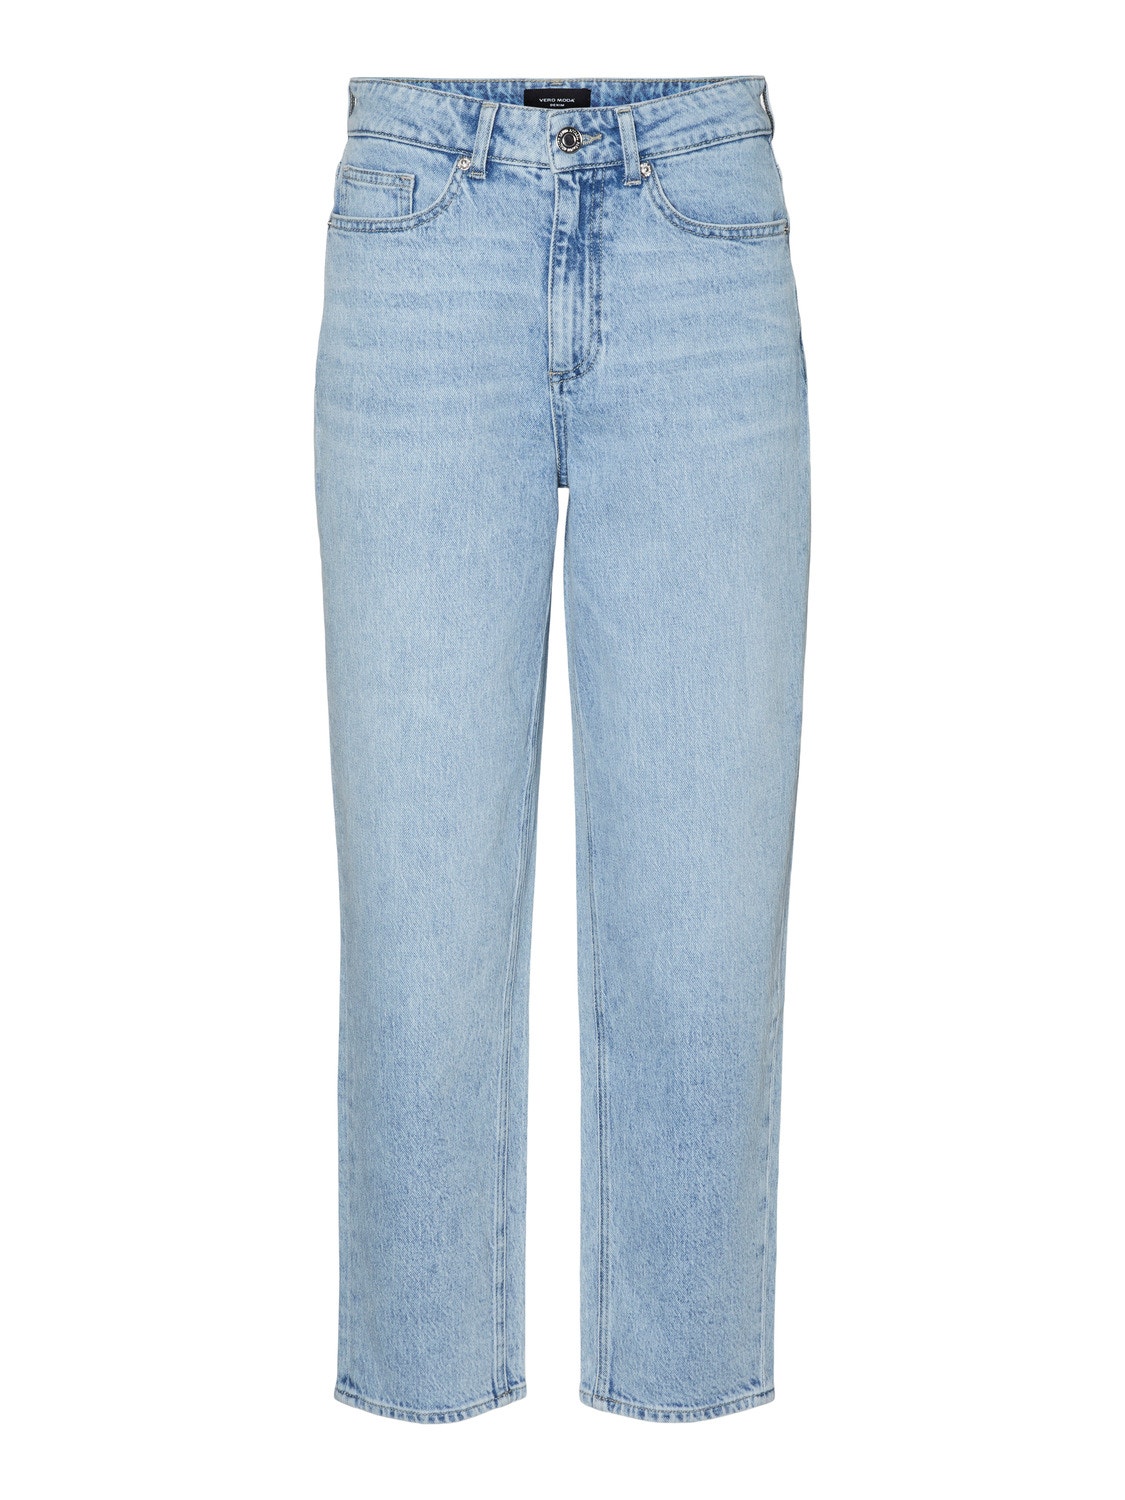 Vero Moda VMTESSA Mom Fit Jeans -Light Blue Denim - 10302290